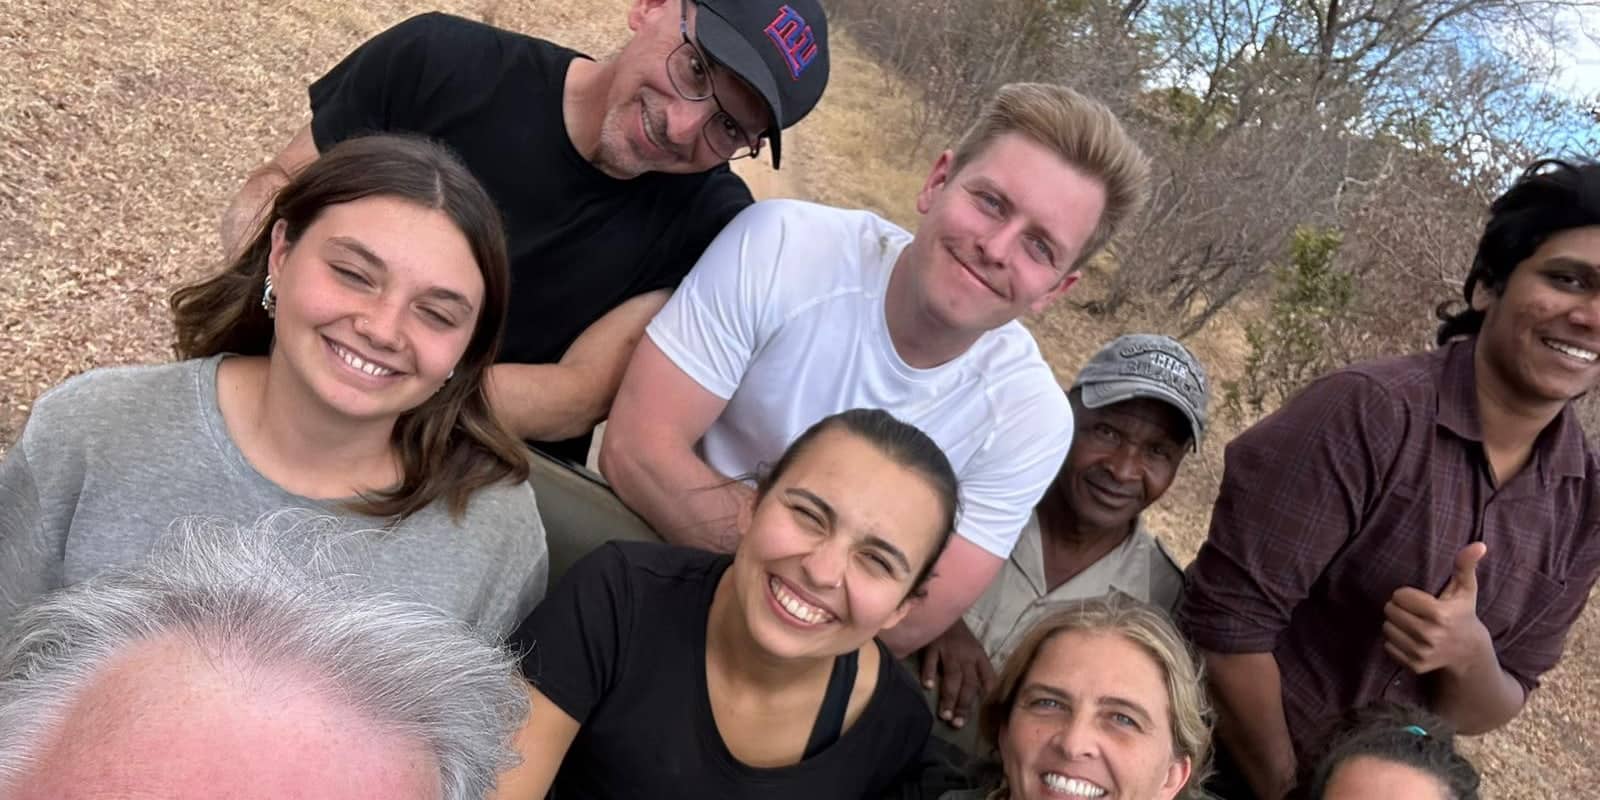 wildlife conservation interns group selfie